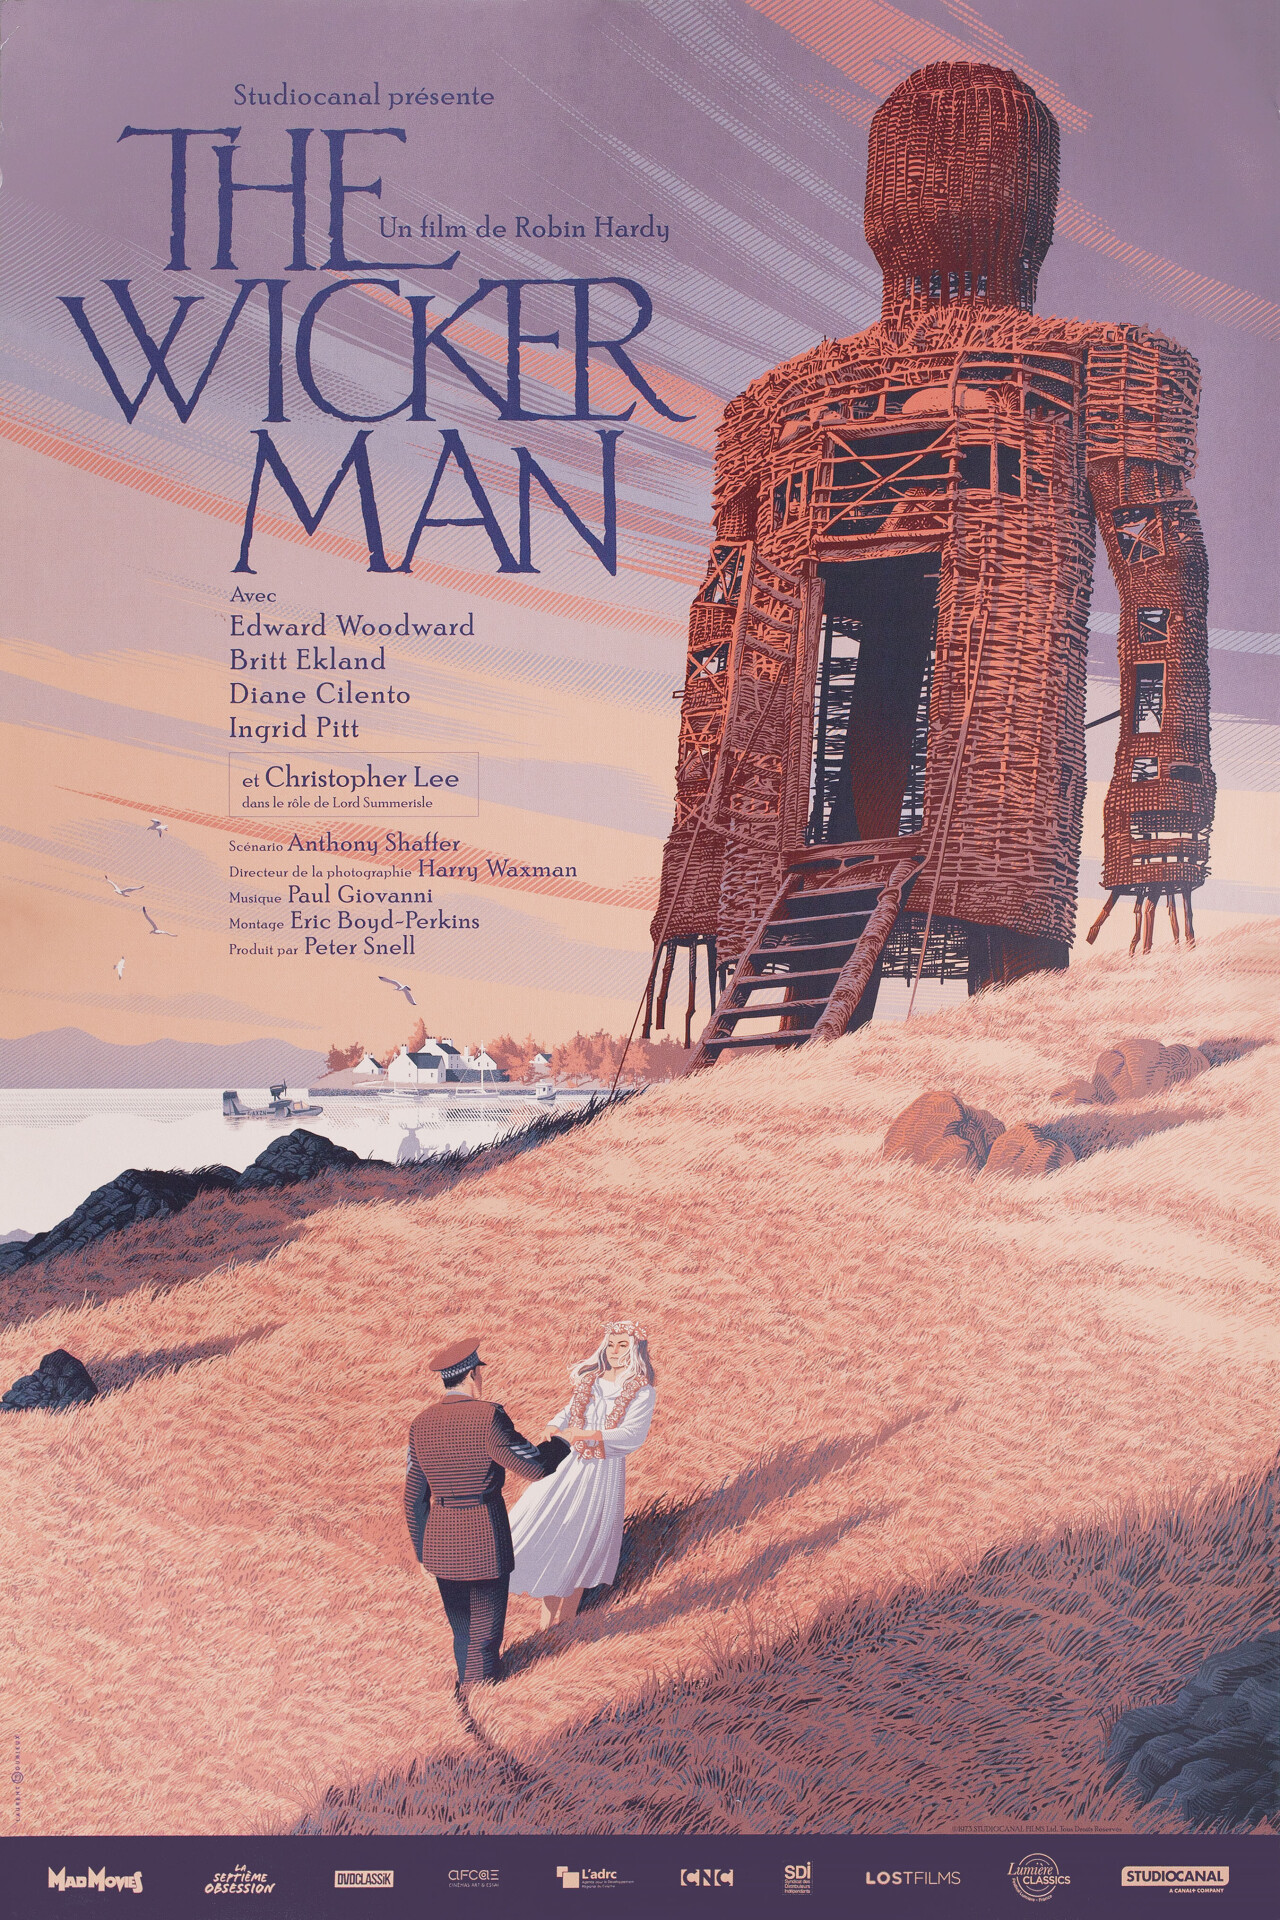 Плетеный человек (The Wicker Man, 1973), режиссёр Робин Харди, французский постер к фильму, автор Лоран Дюрье (ужасы, 2020 год)_1